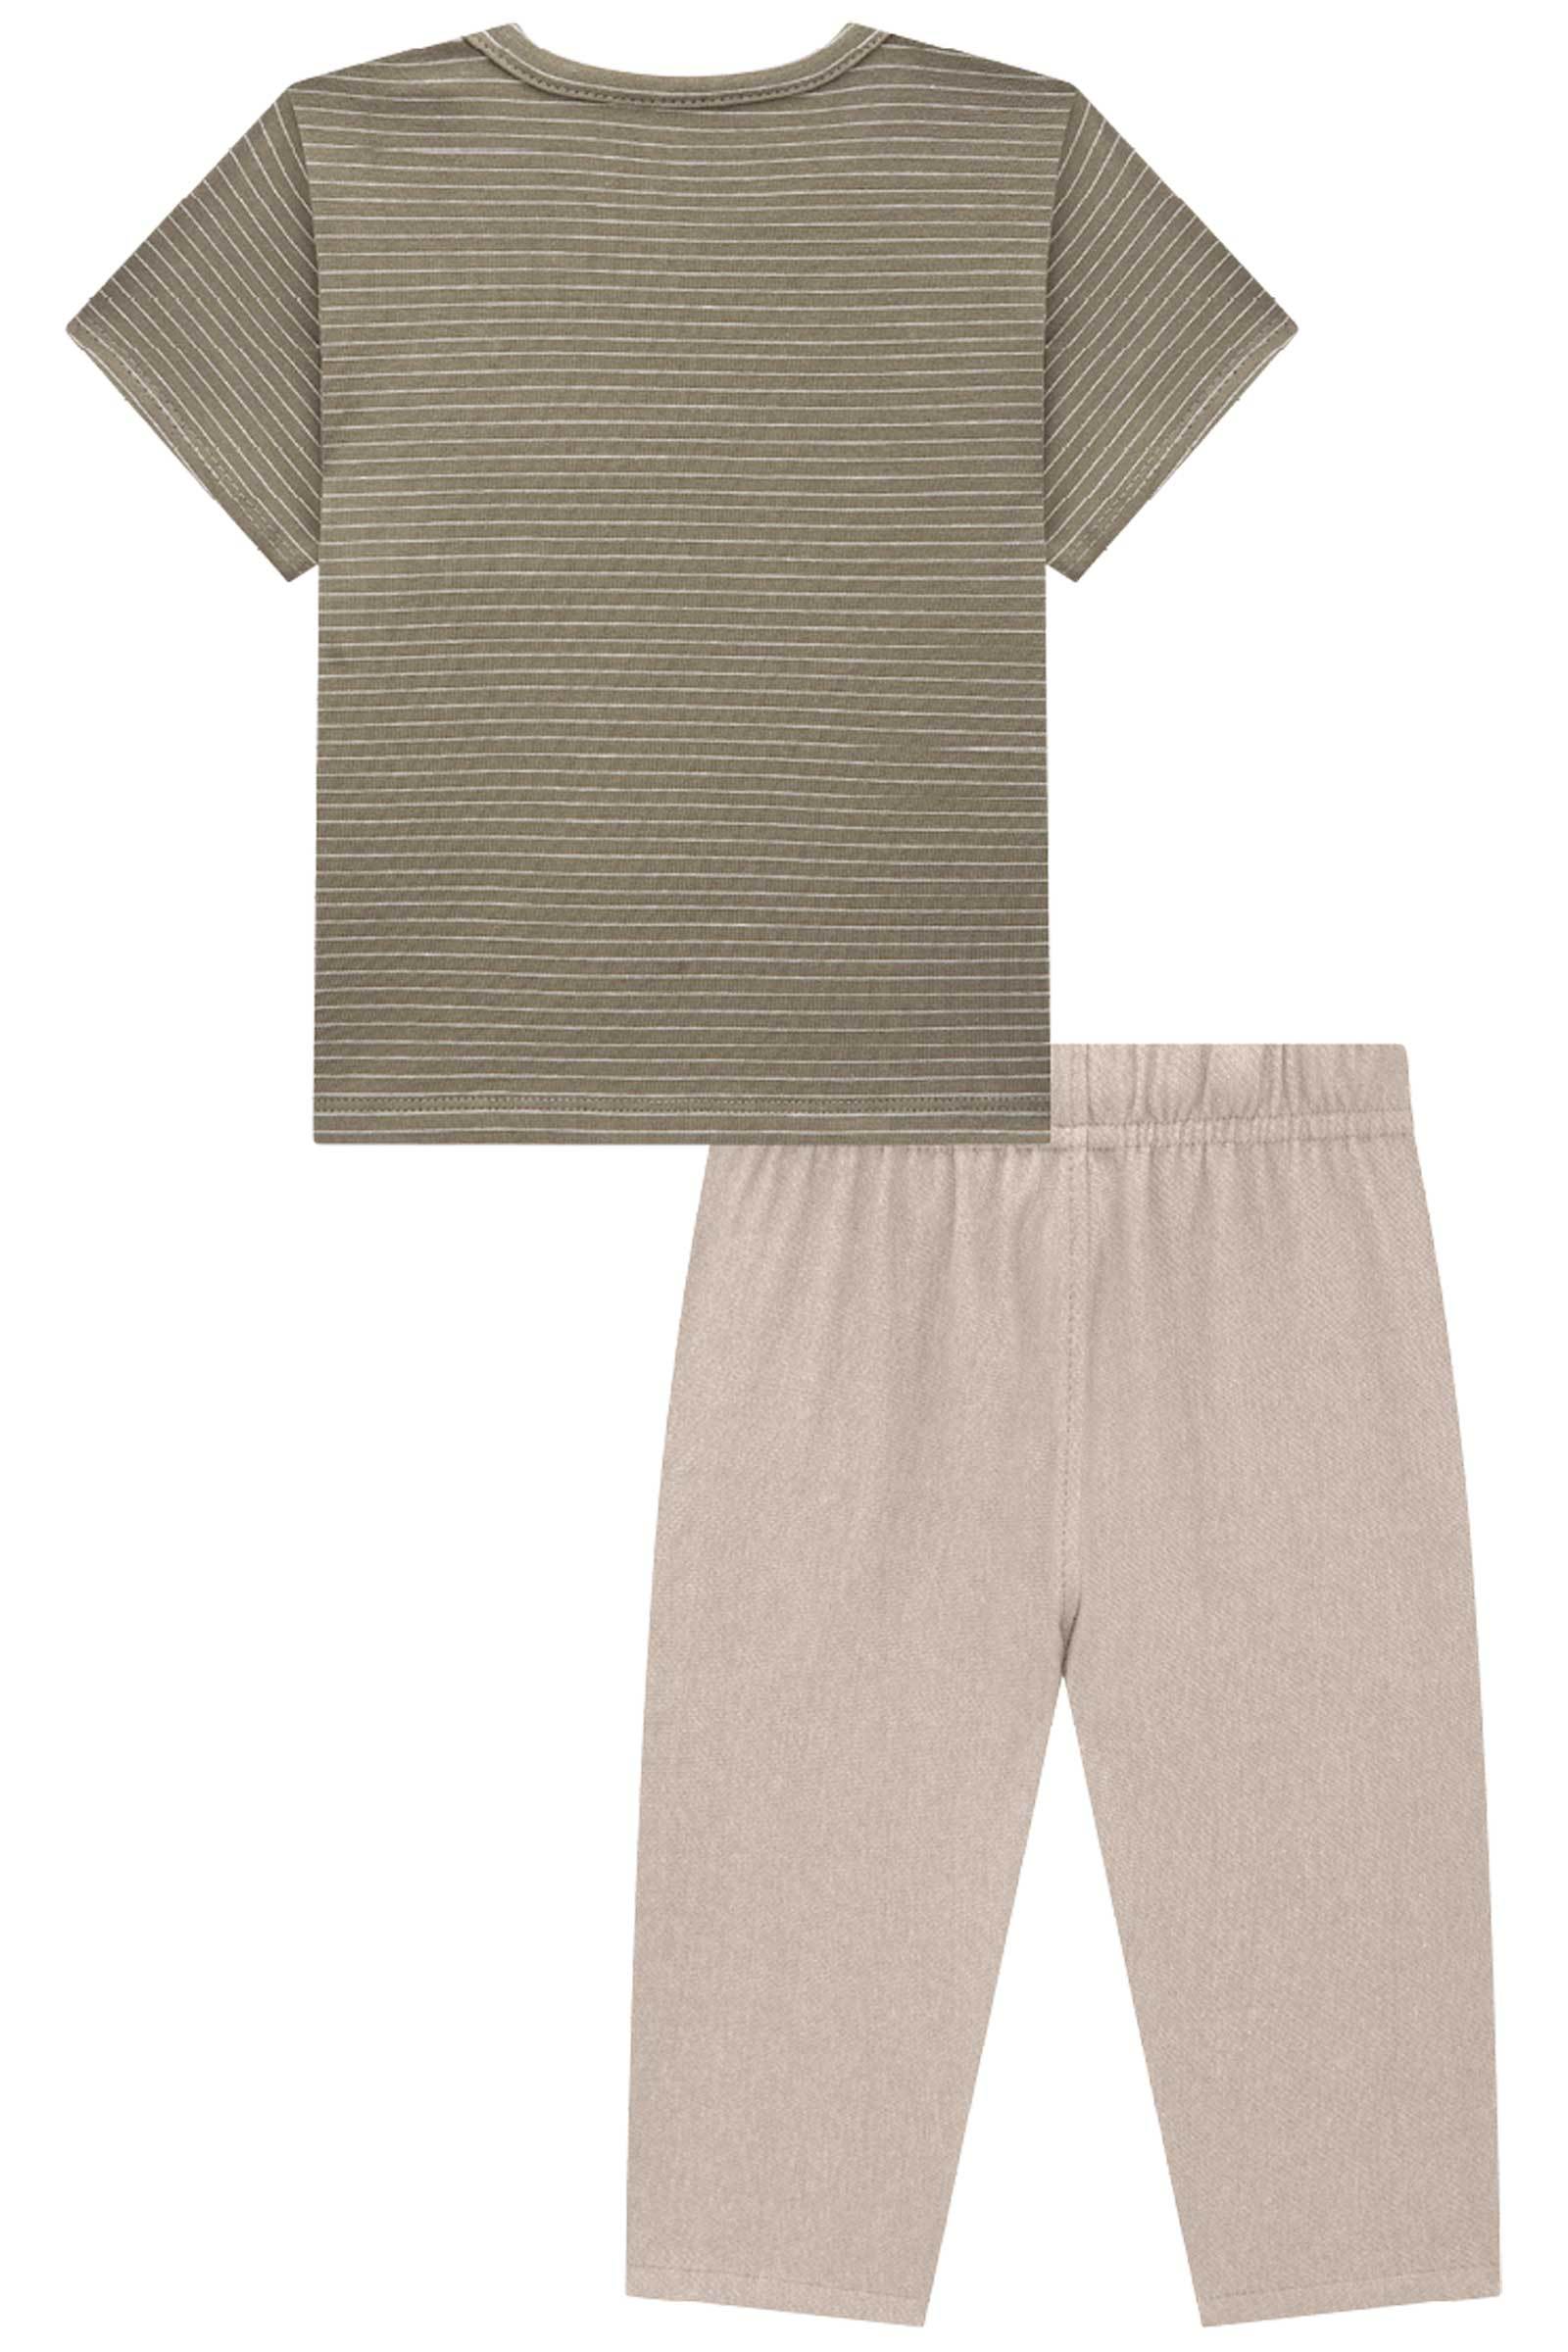 Cj de Camiseta em Cotton Listrado Fio Tinto e Calça Sikinny Comfort em Cotton Jeans C/ Elas 74577 Johnny Fox